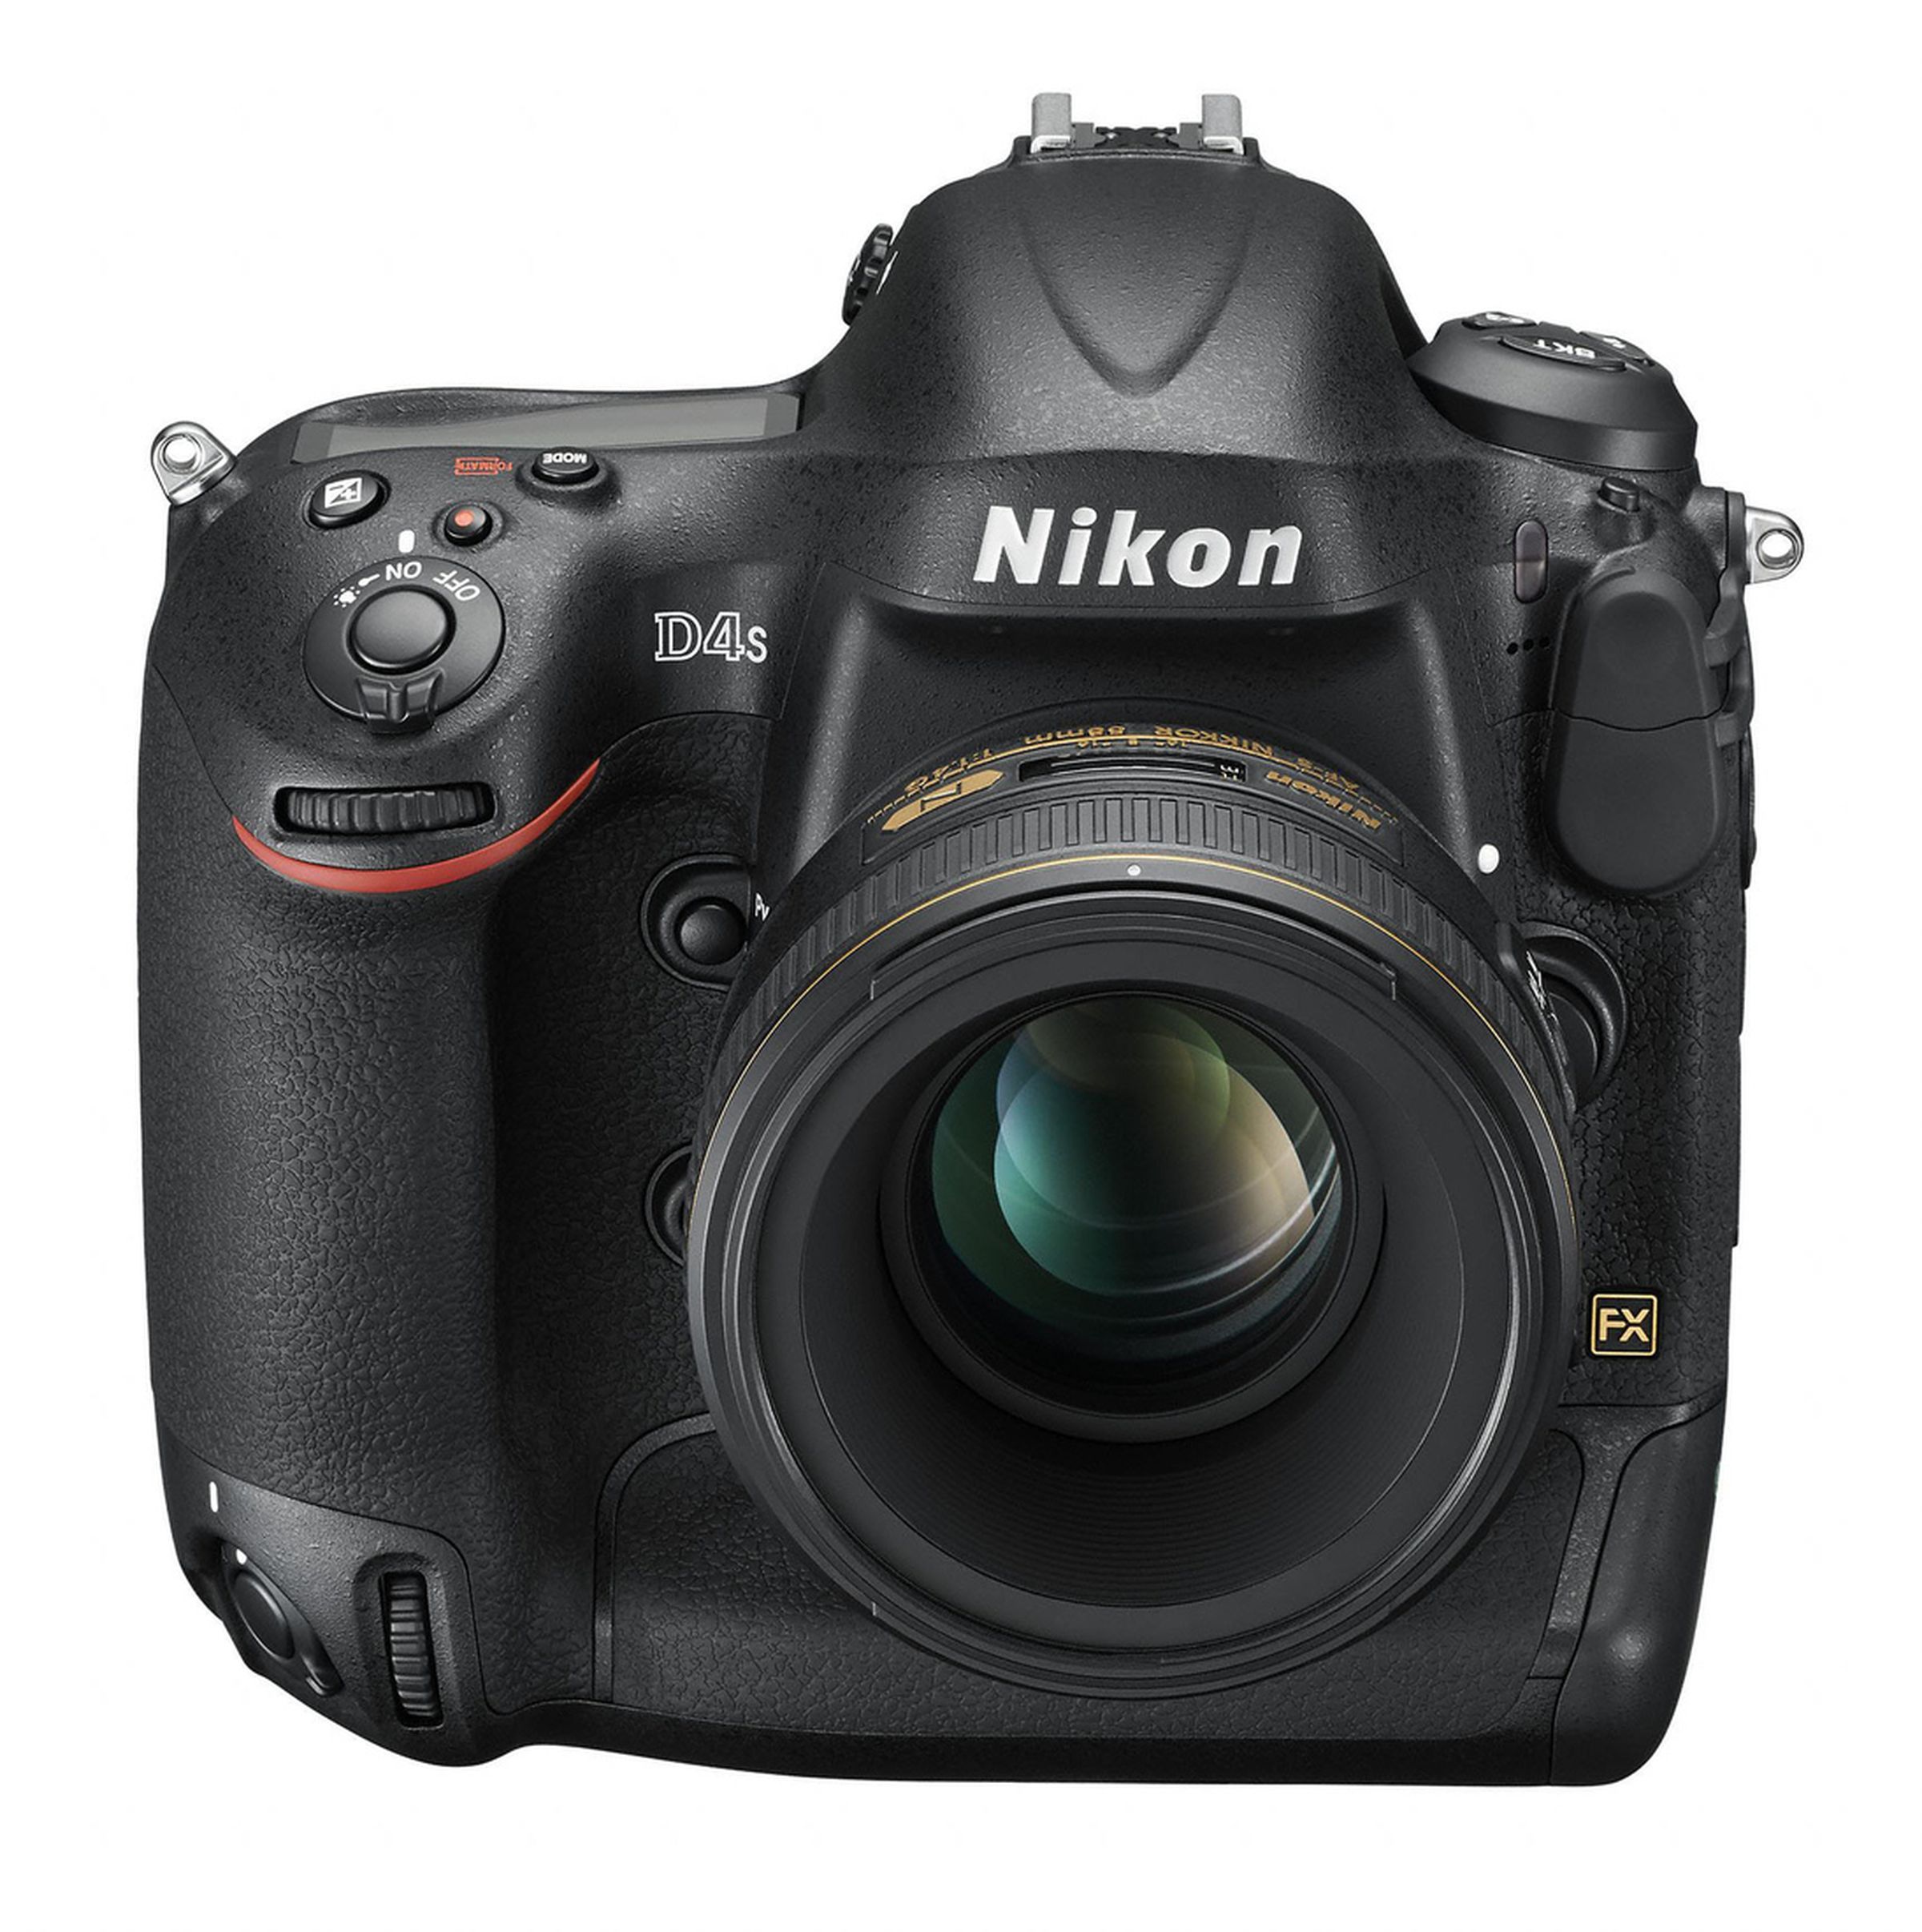 Nikon D4S pictures